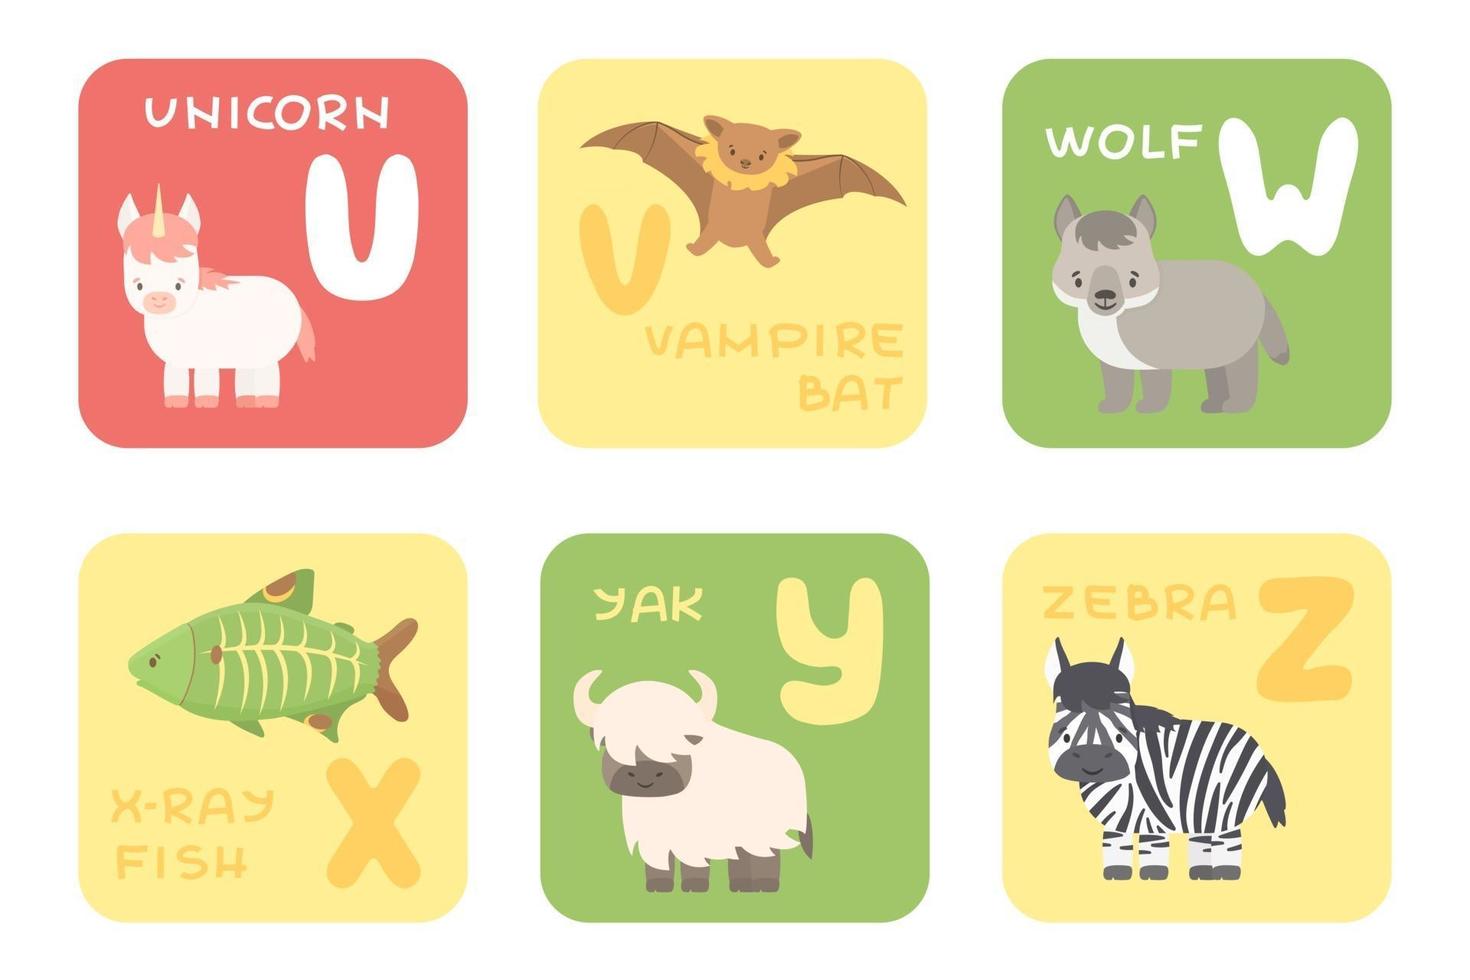 söt vektor uz zoo alfabetet isolerade utbildningskort med tecknade djur enhörning vampyr bat varg röntgen fisk yak zebra djur i platt stil